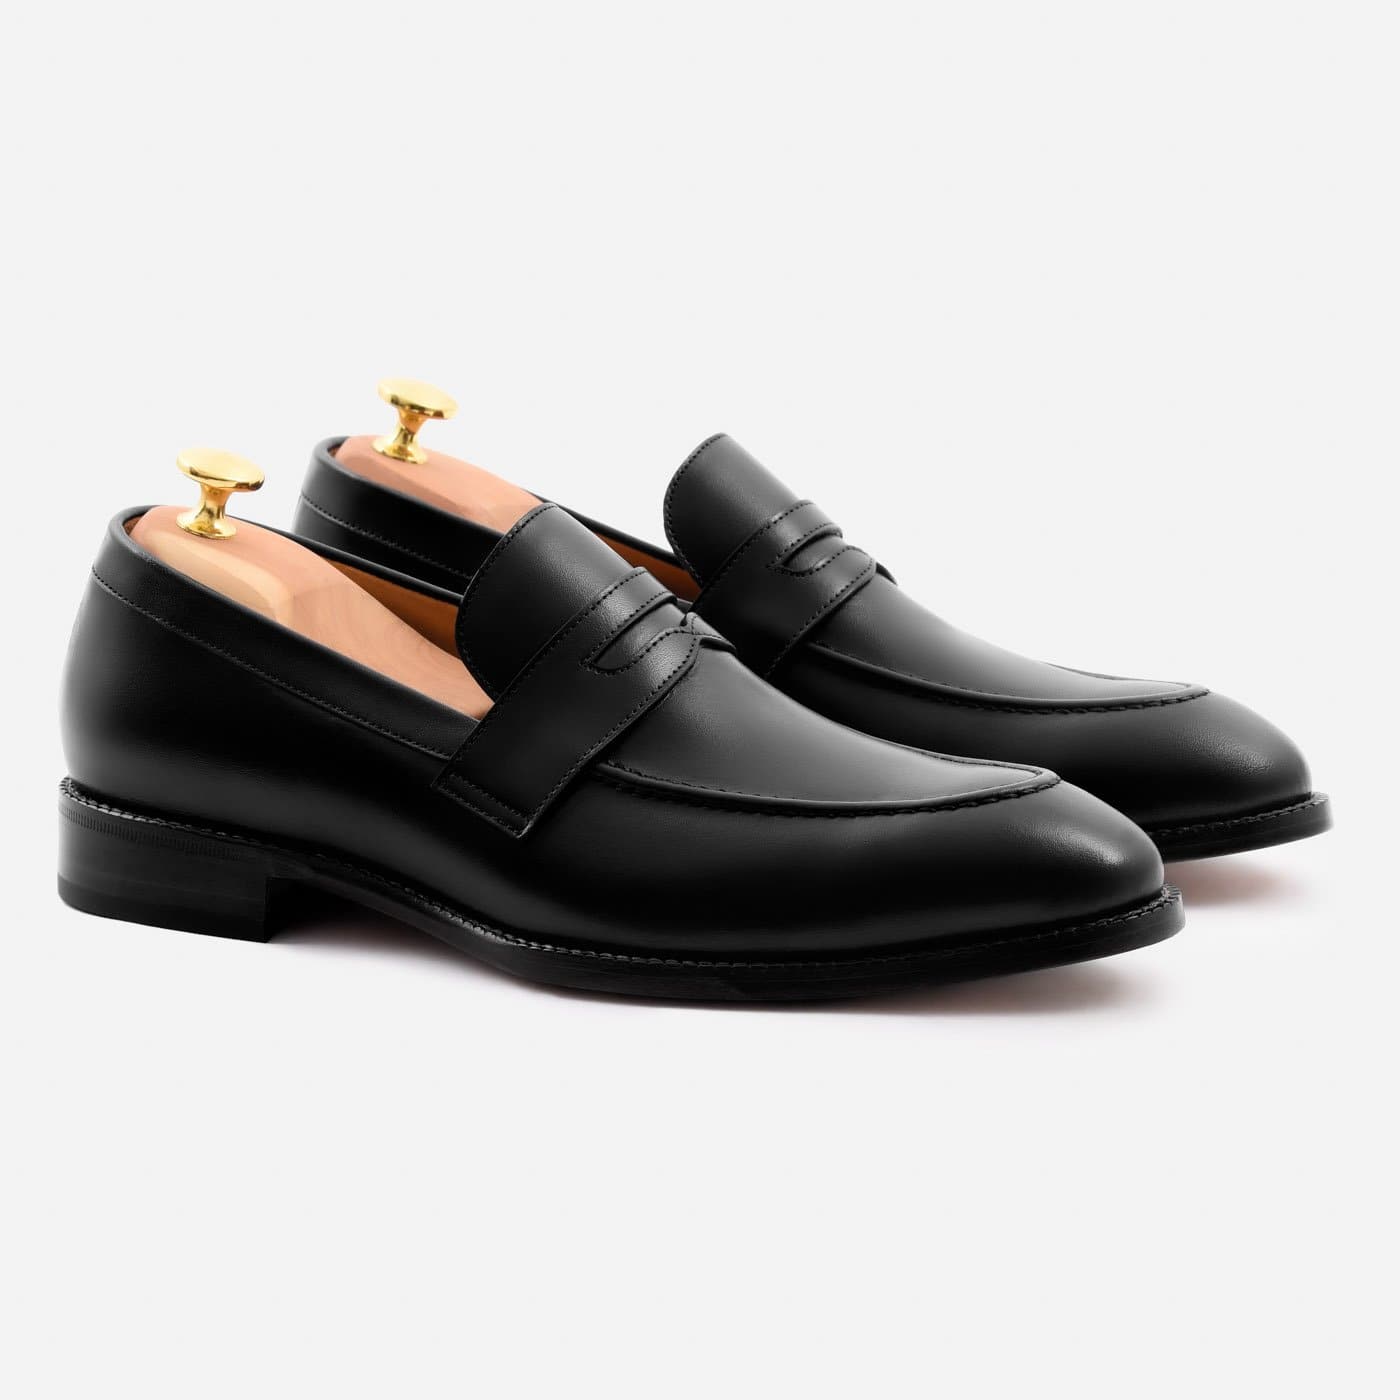 Dress Shoes for Men Online | Aldo Shoes